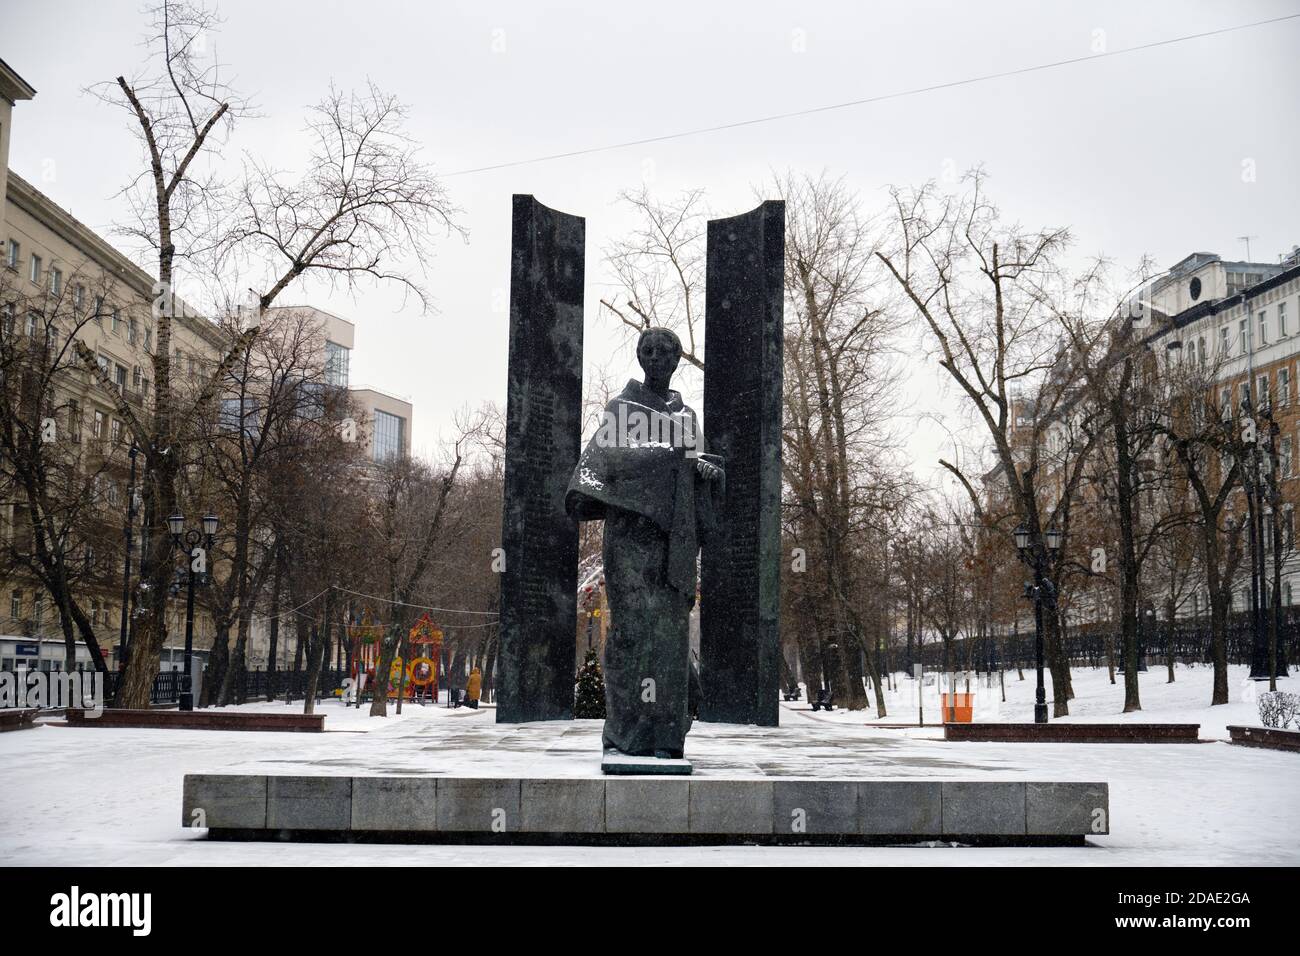 Das Denkmal Nadeschda Krupskaja - Lenins Frau und der Kollege auf dem Platz des Sretenski Tores. Moskau, Russland, 24.01.2020 Stockfoto